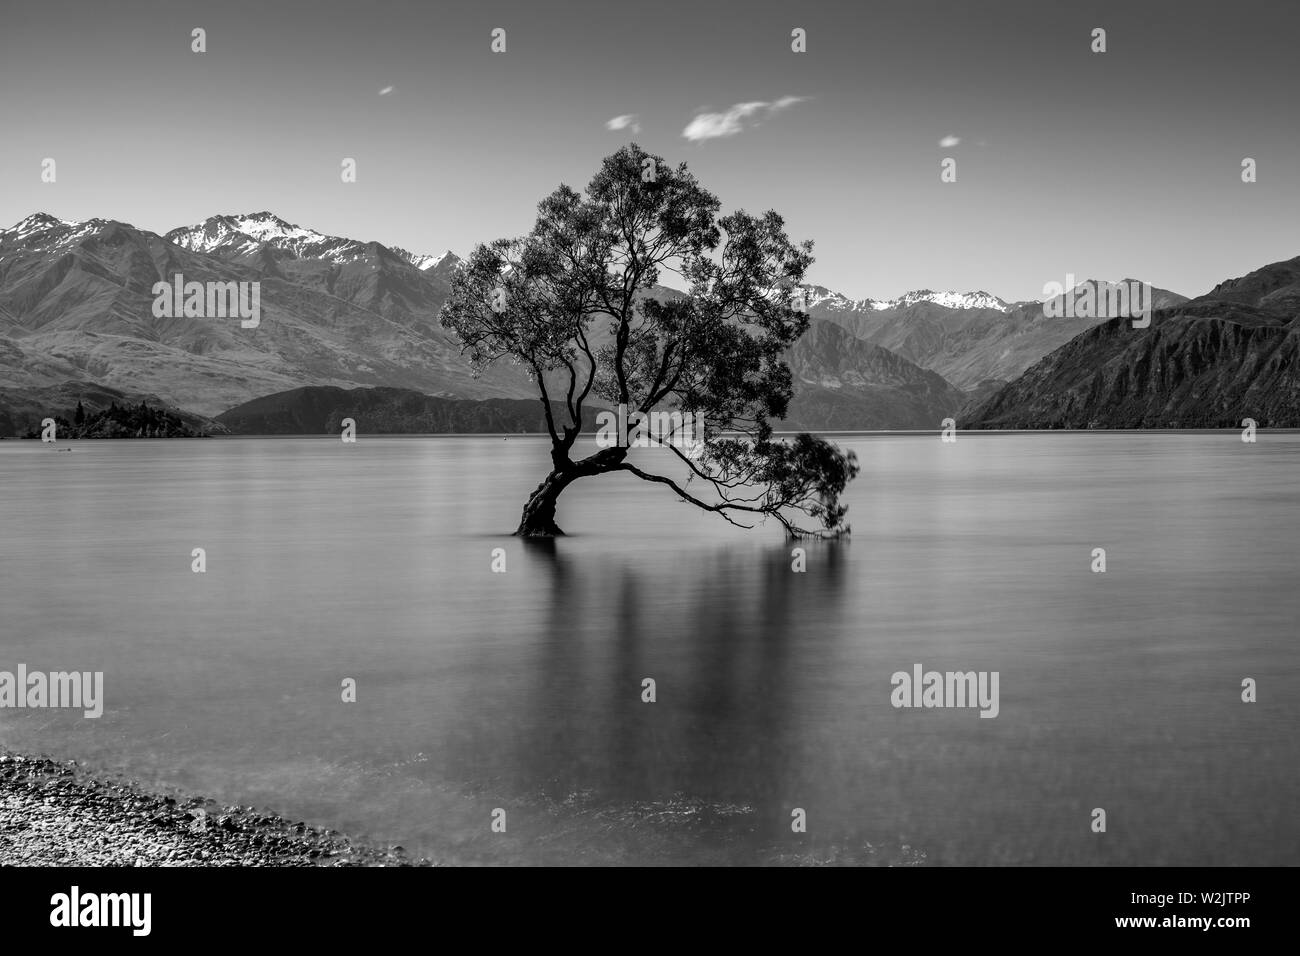 L'emblématique "Lone Tree' dans le lac, le lac Wanaka, Région de l'Otago, île du Sud, Nouvelle-Zélande Banque D'Images